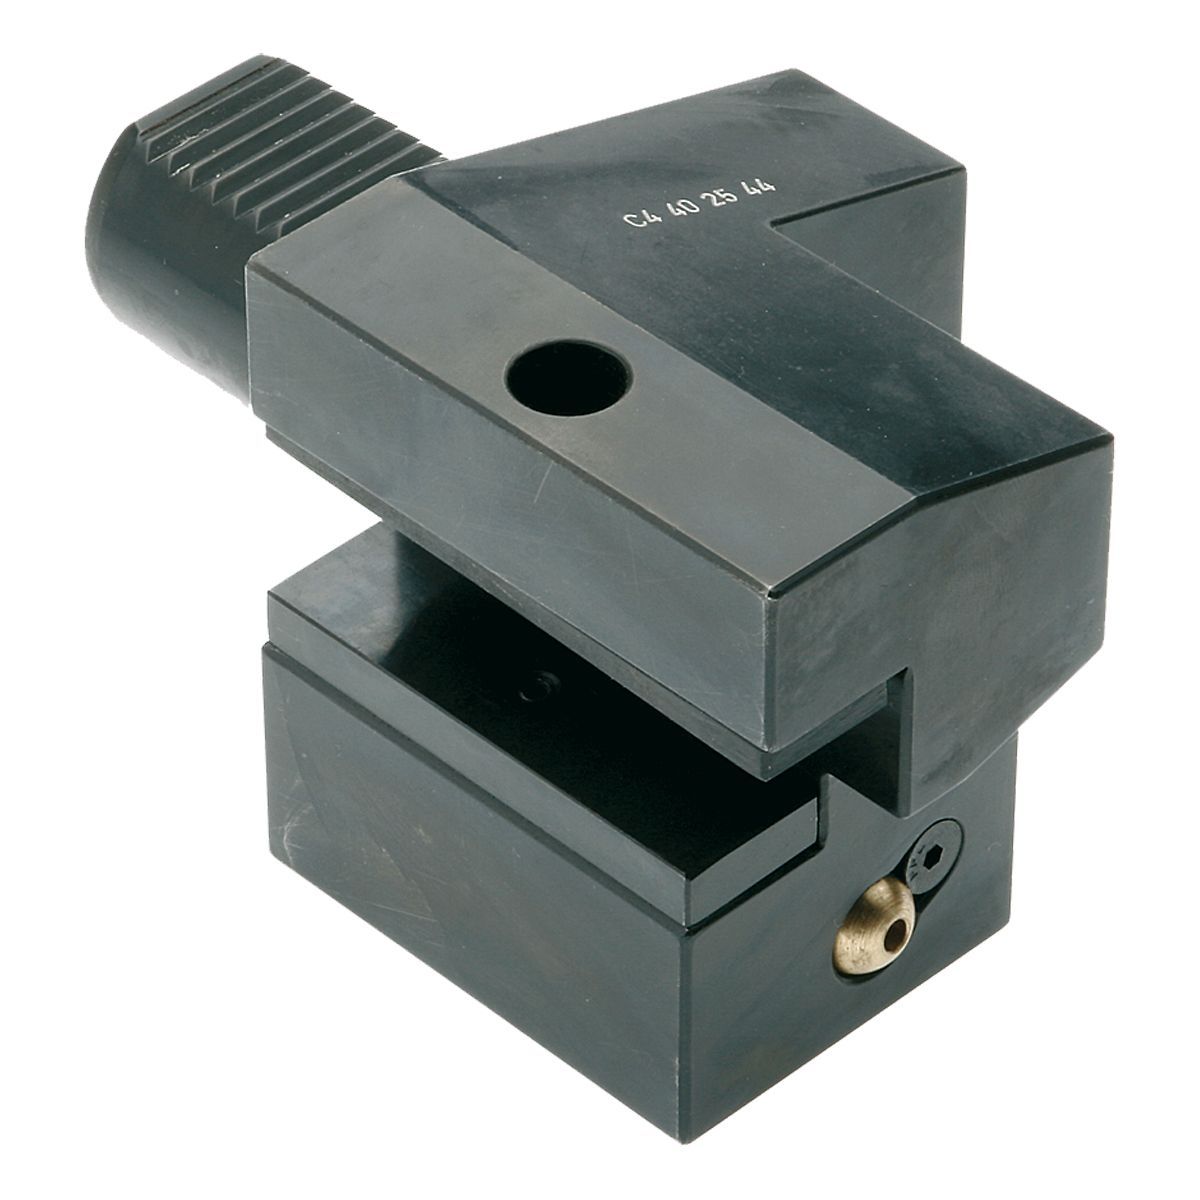 Axial-Werkzeughalter C4-25x16 DIN 69880 (ISO 10889)